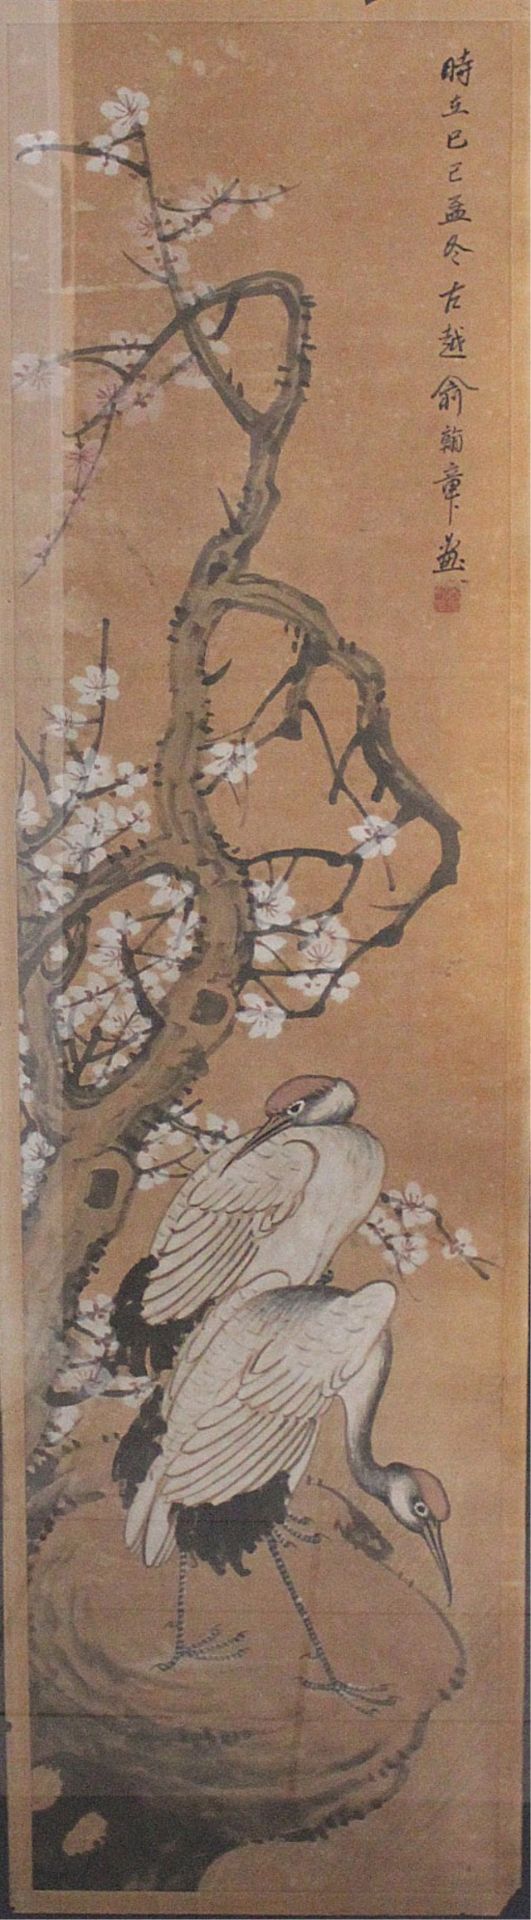 Tuschemalerei im Stil von Qi Baishi